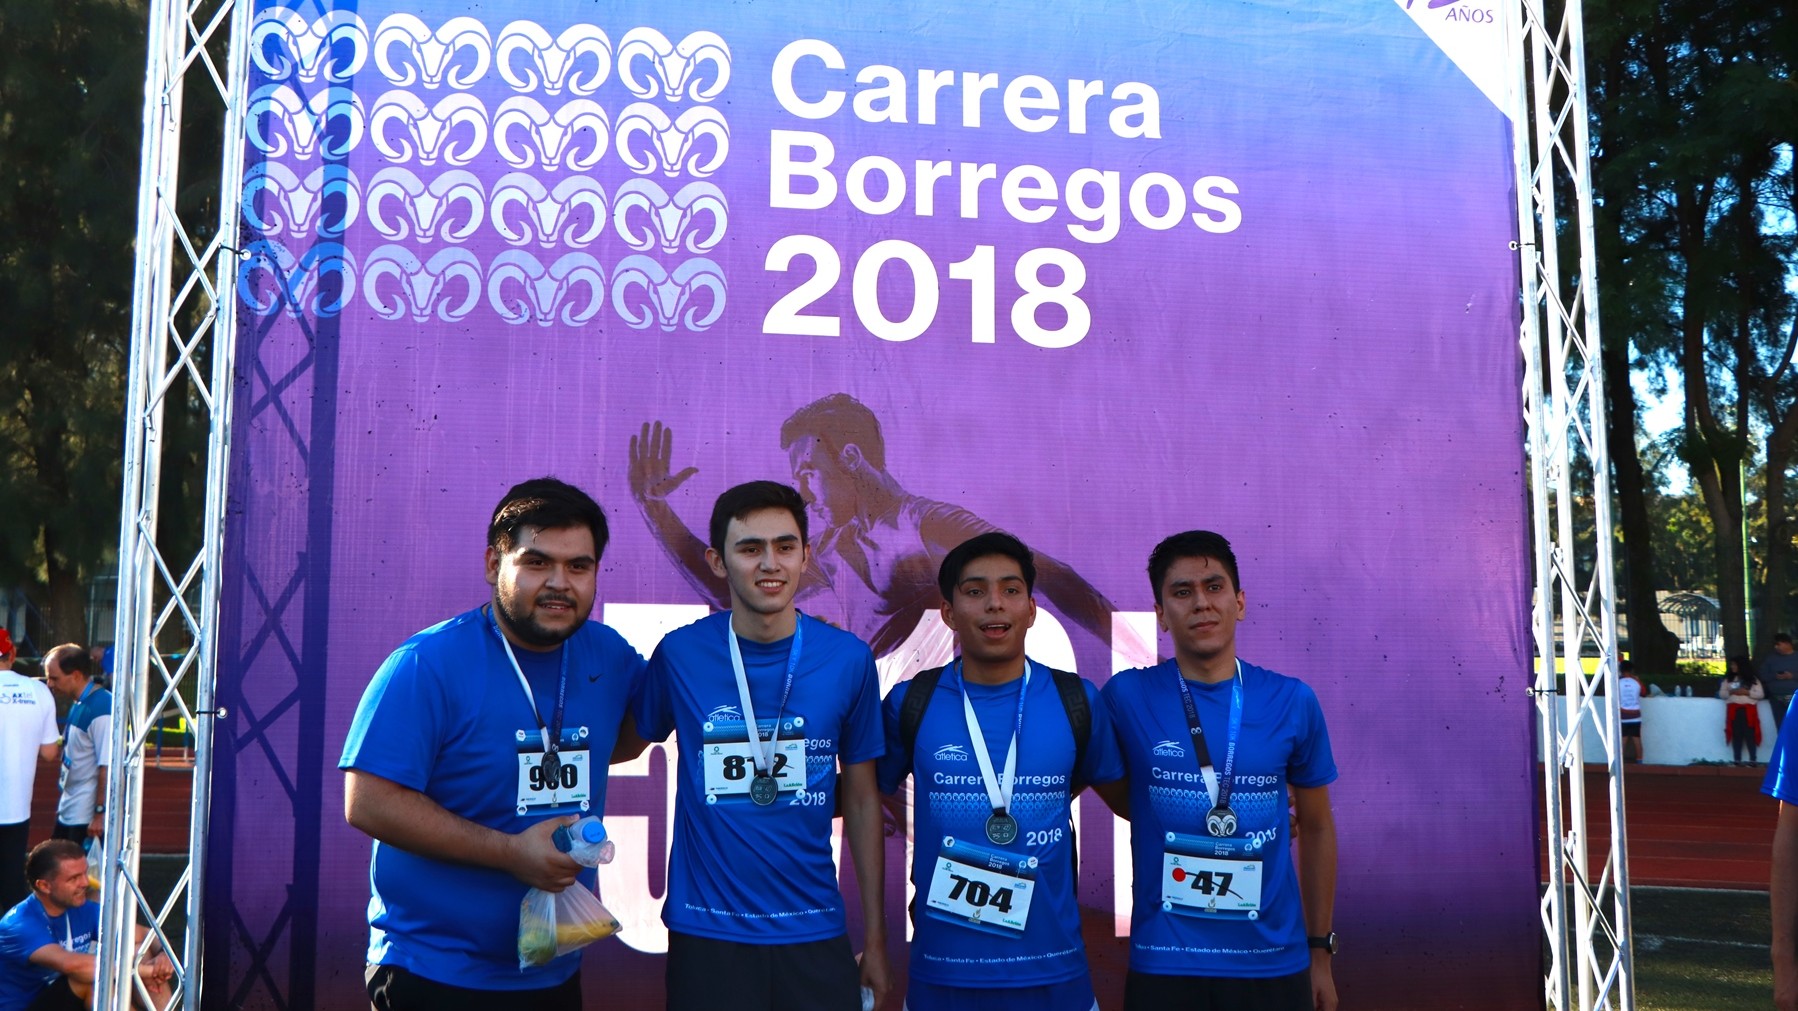 Carrera Borregos 2018